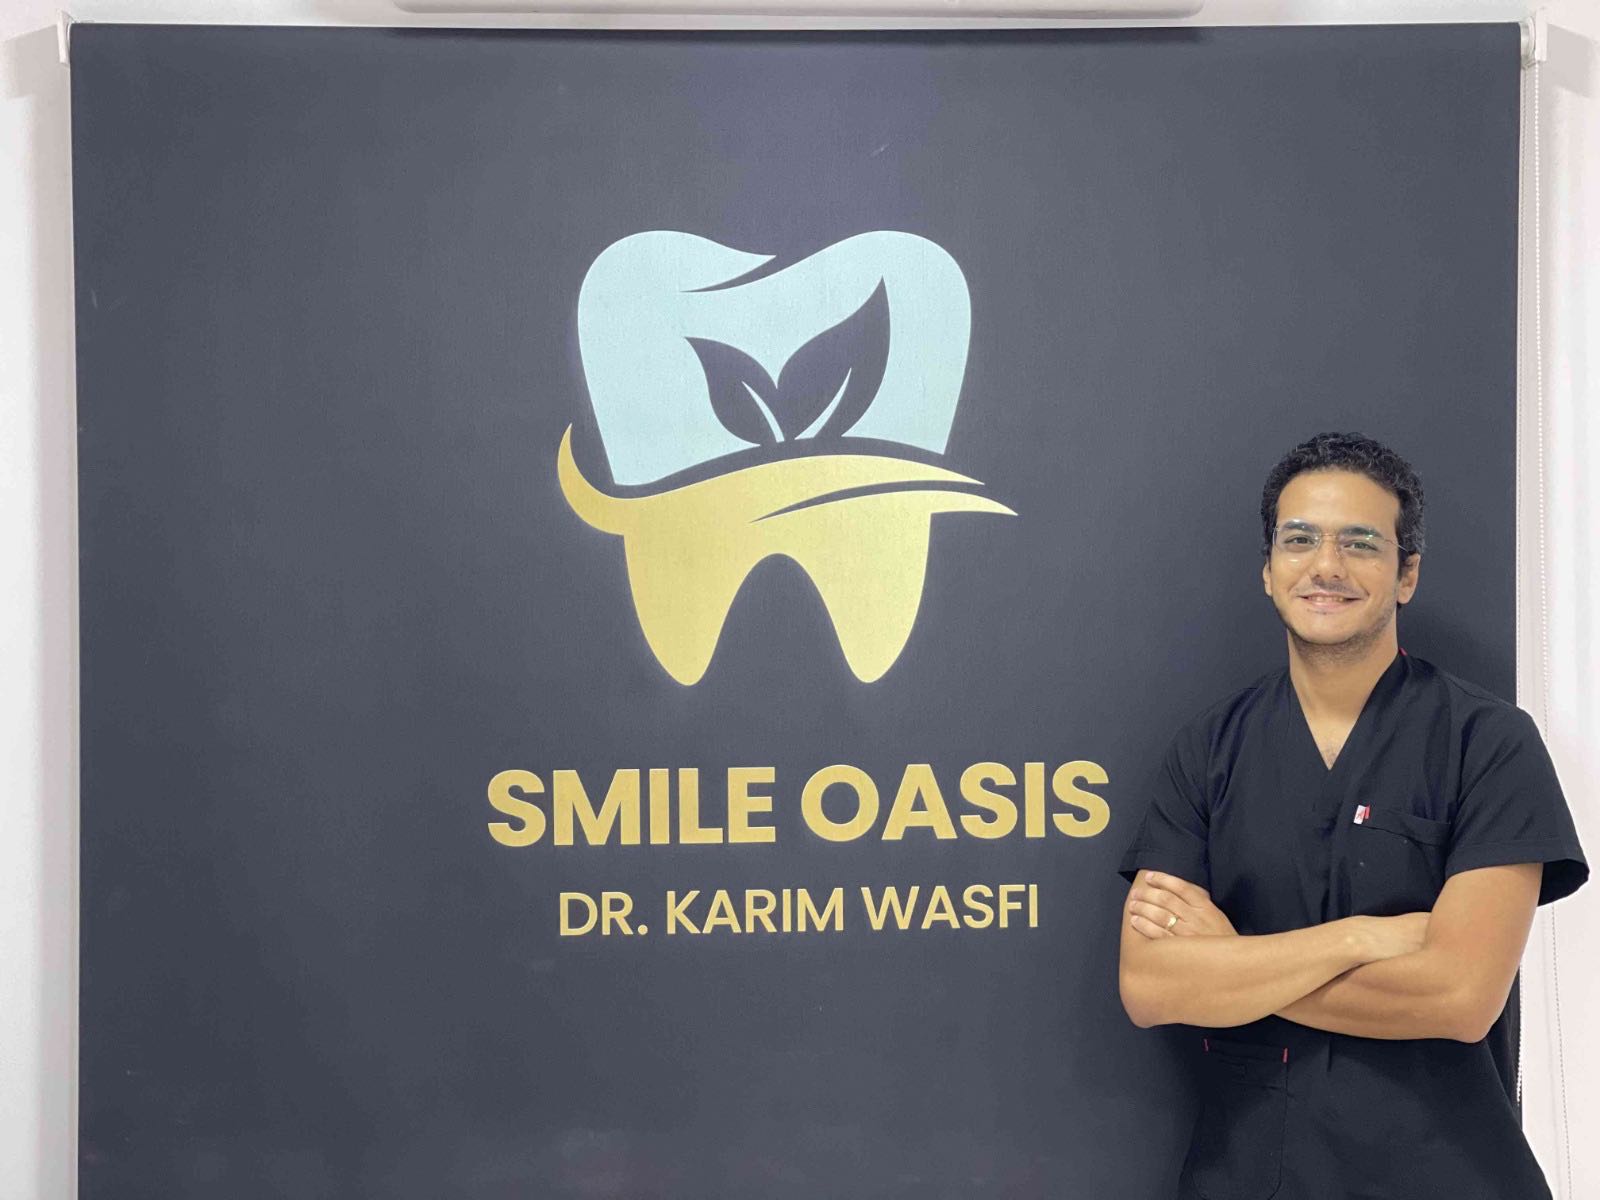 Dr. Karim Wasfi